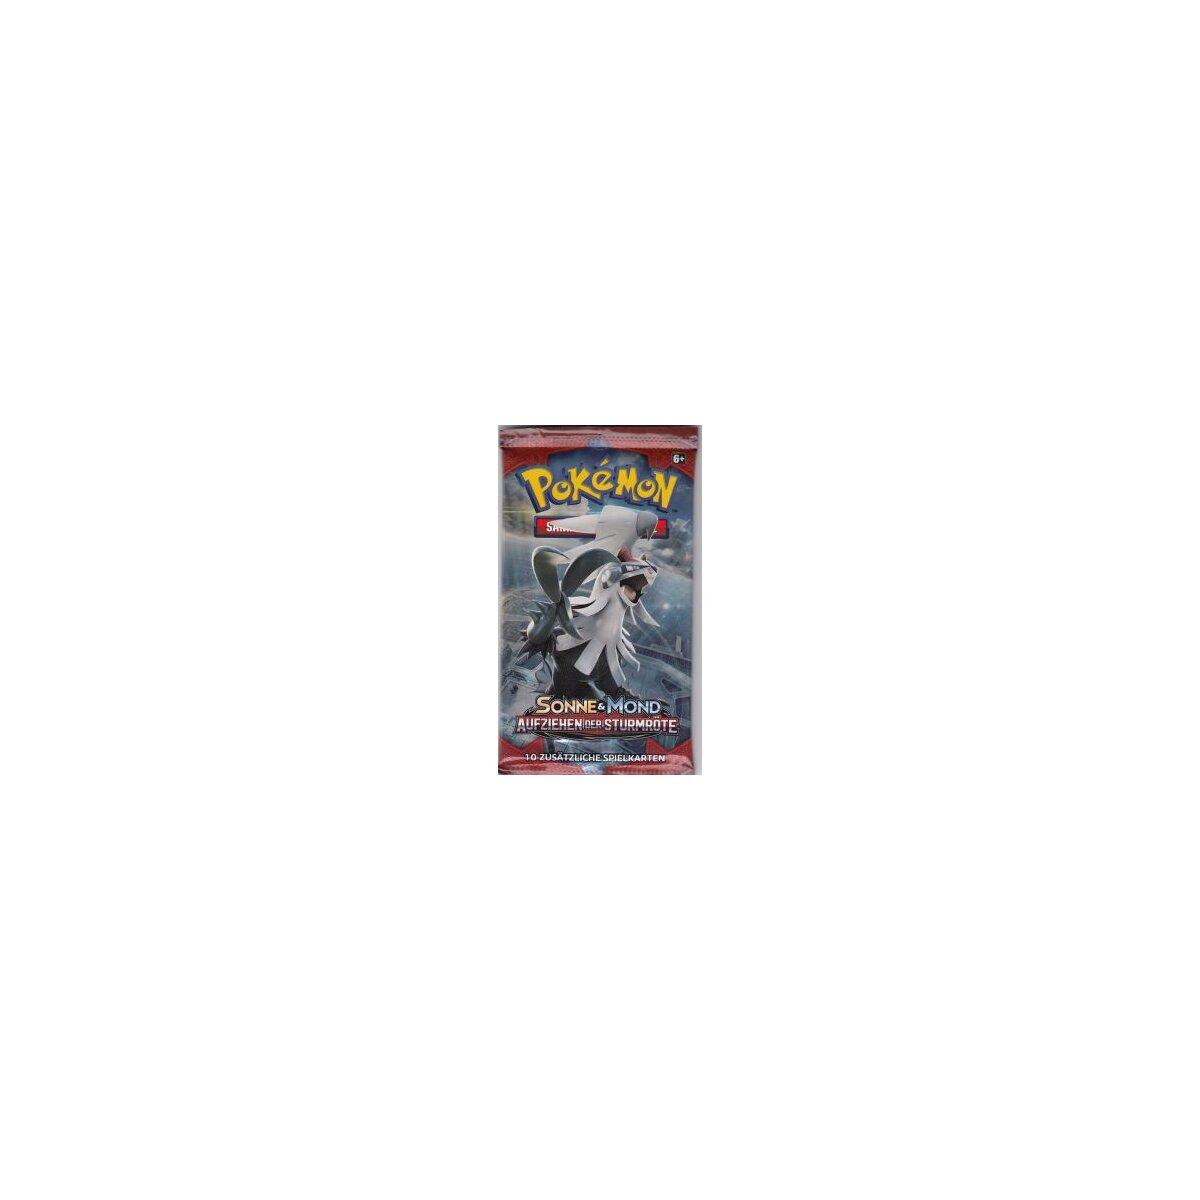 Pokémon Sonne & Mond - Aufziehen der Sturmröte Booster